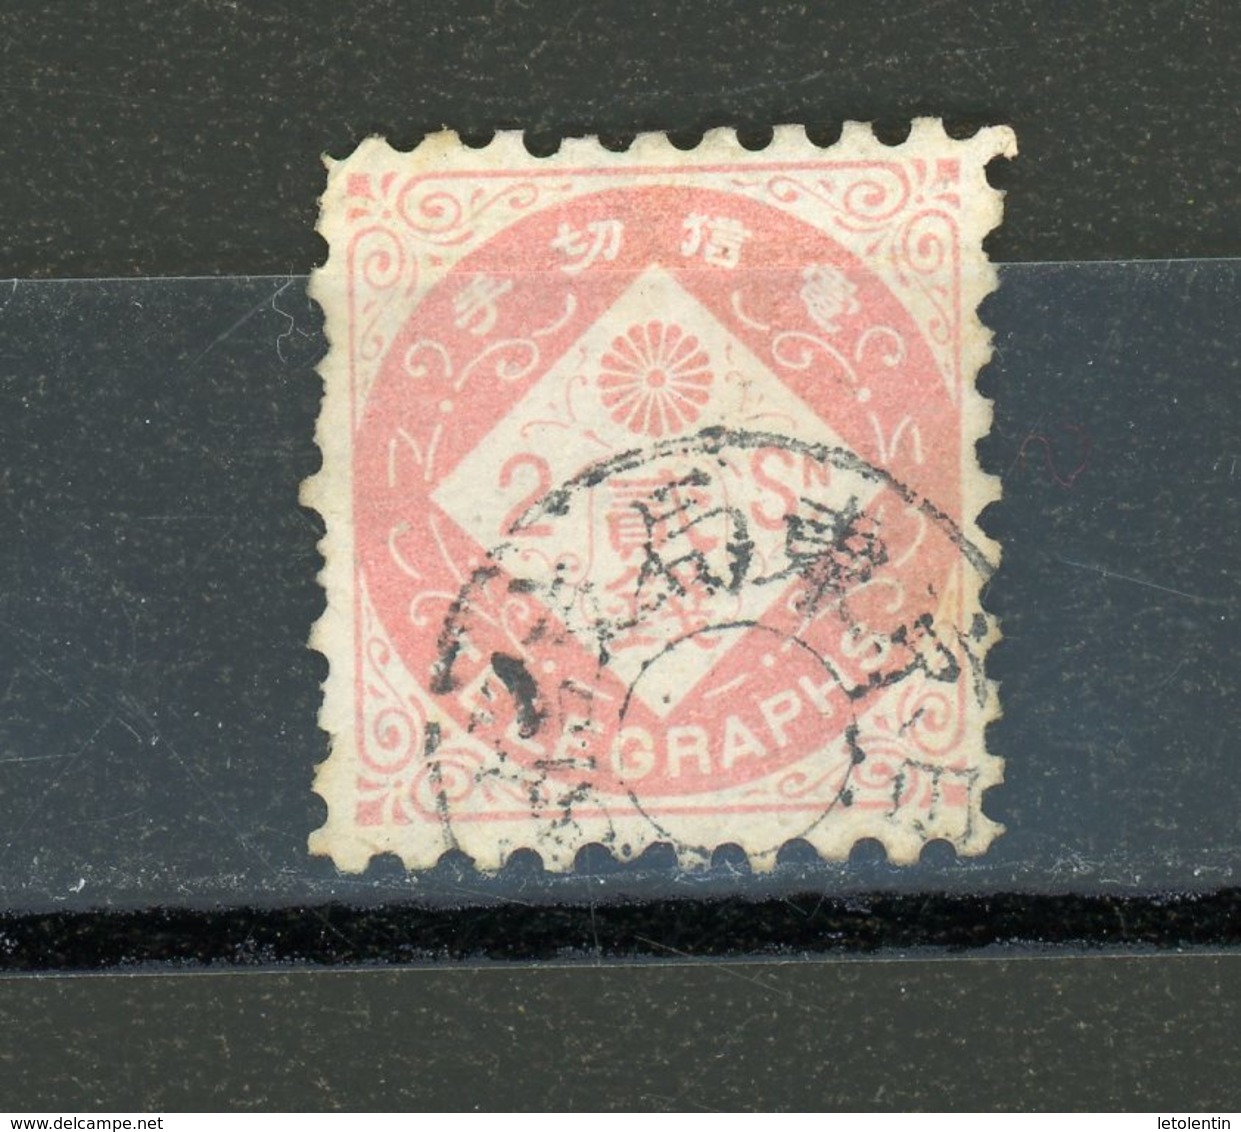 JAPON - T TELEGRAPHE - N°Yt 2 Obli. - Telegraph Stamps